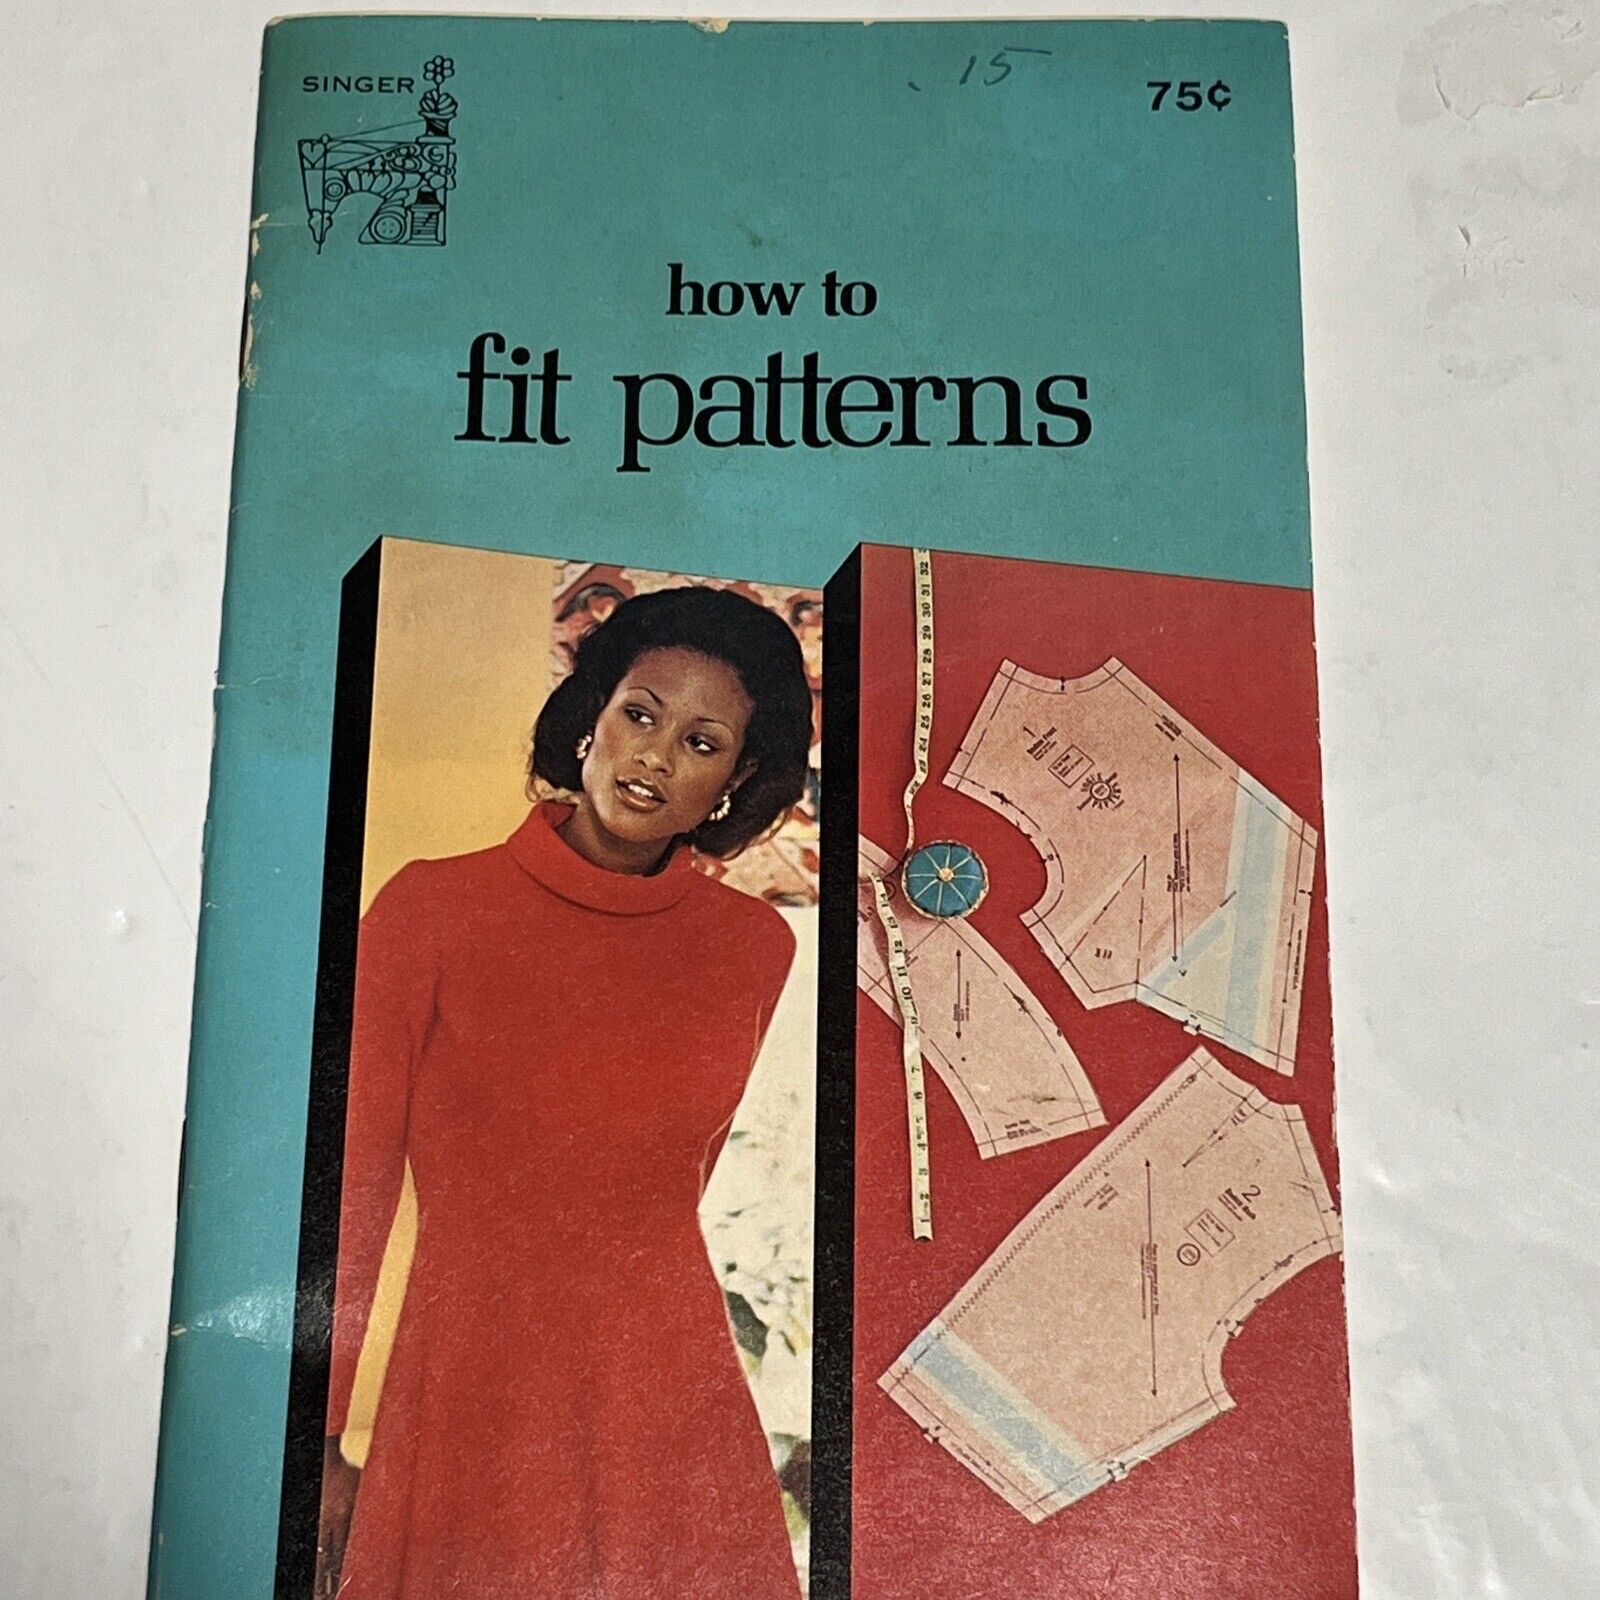 Singer How To Fit Patterns Booklet Vintage Pamphlet (1974)